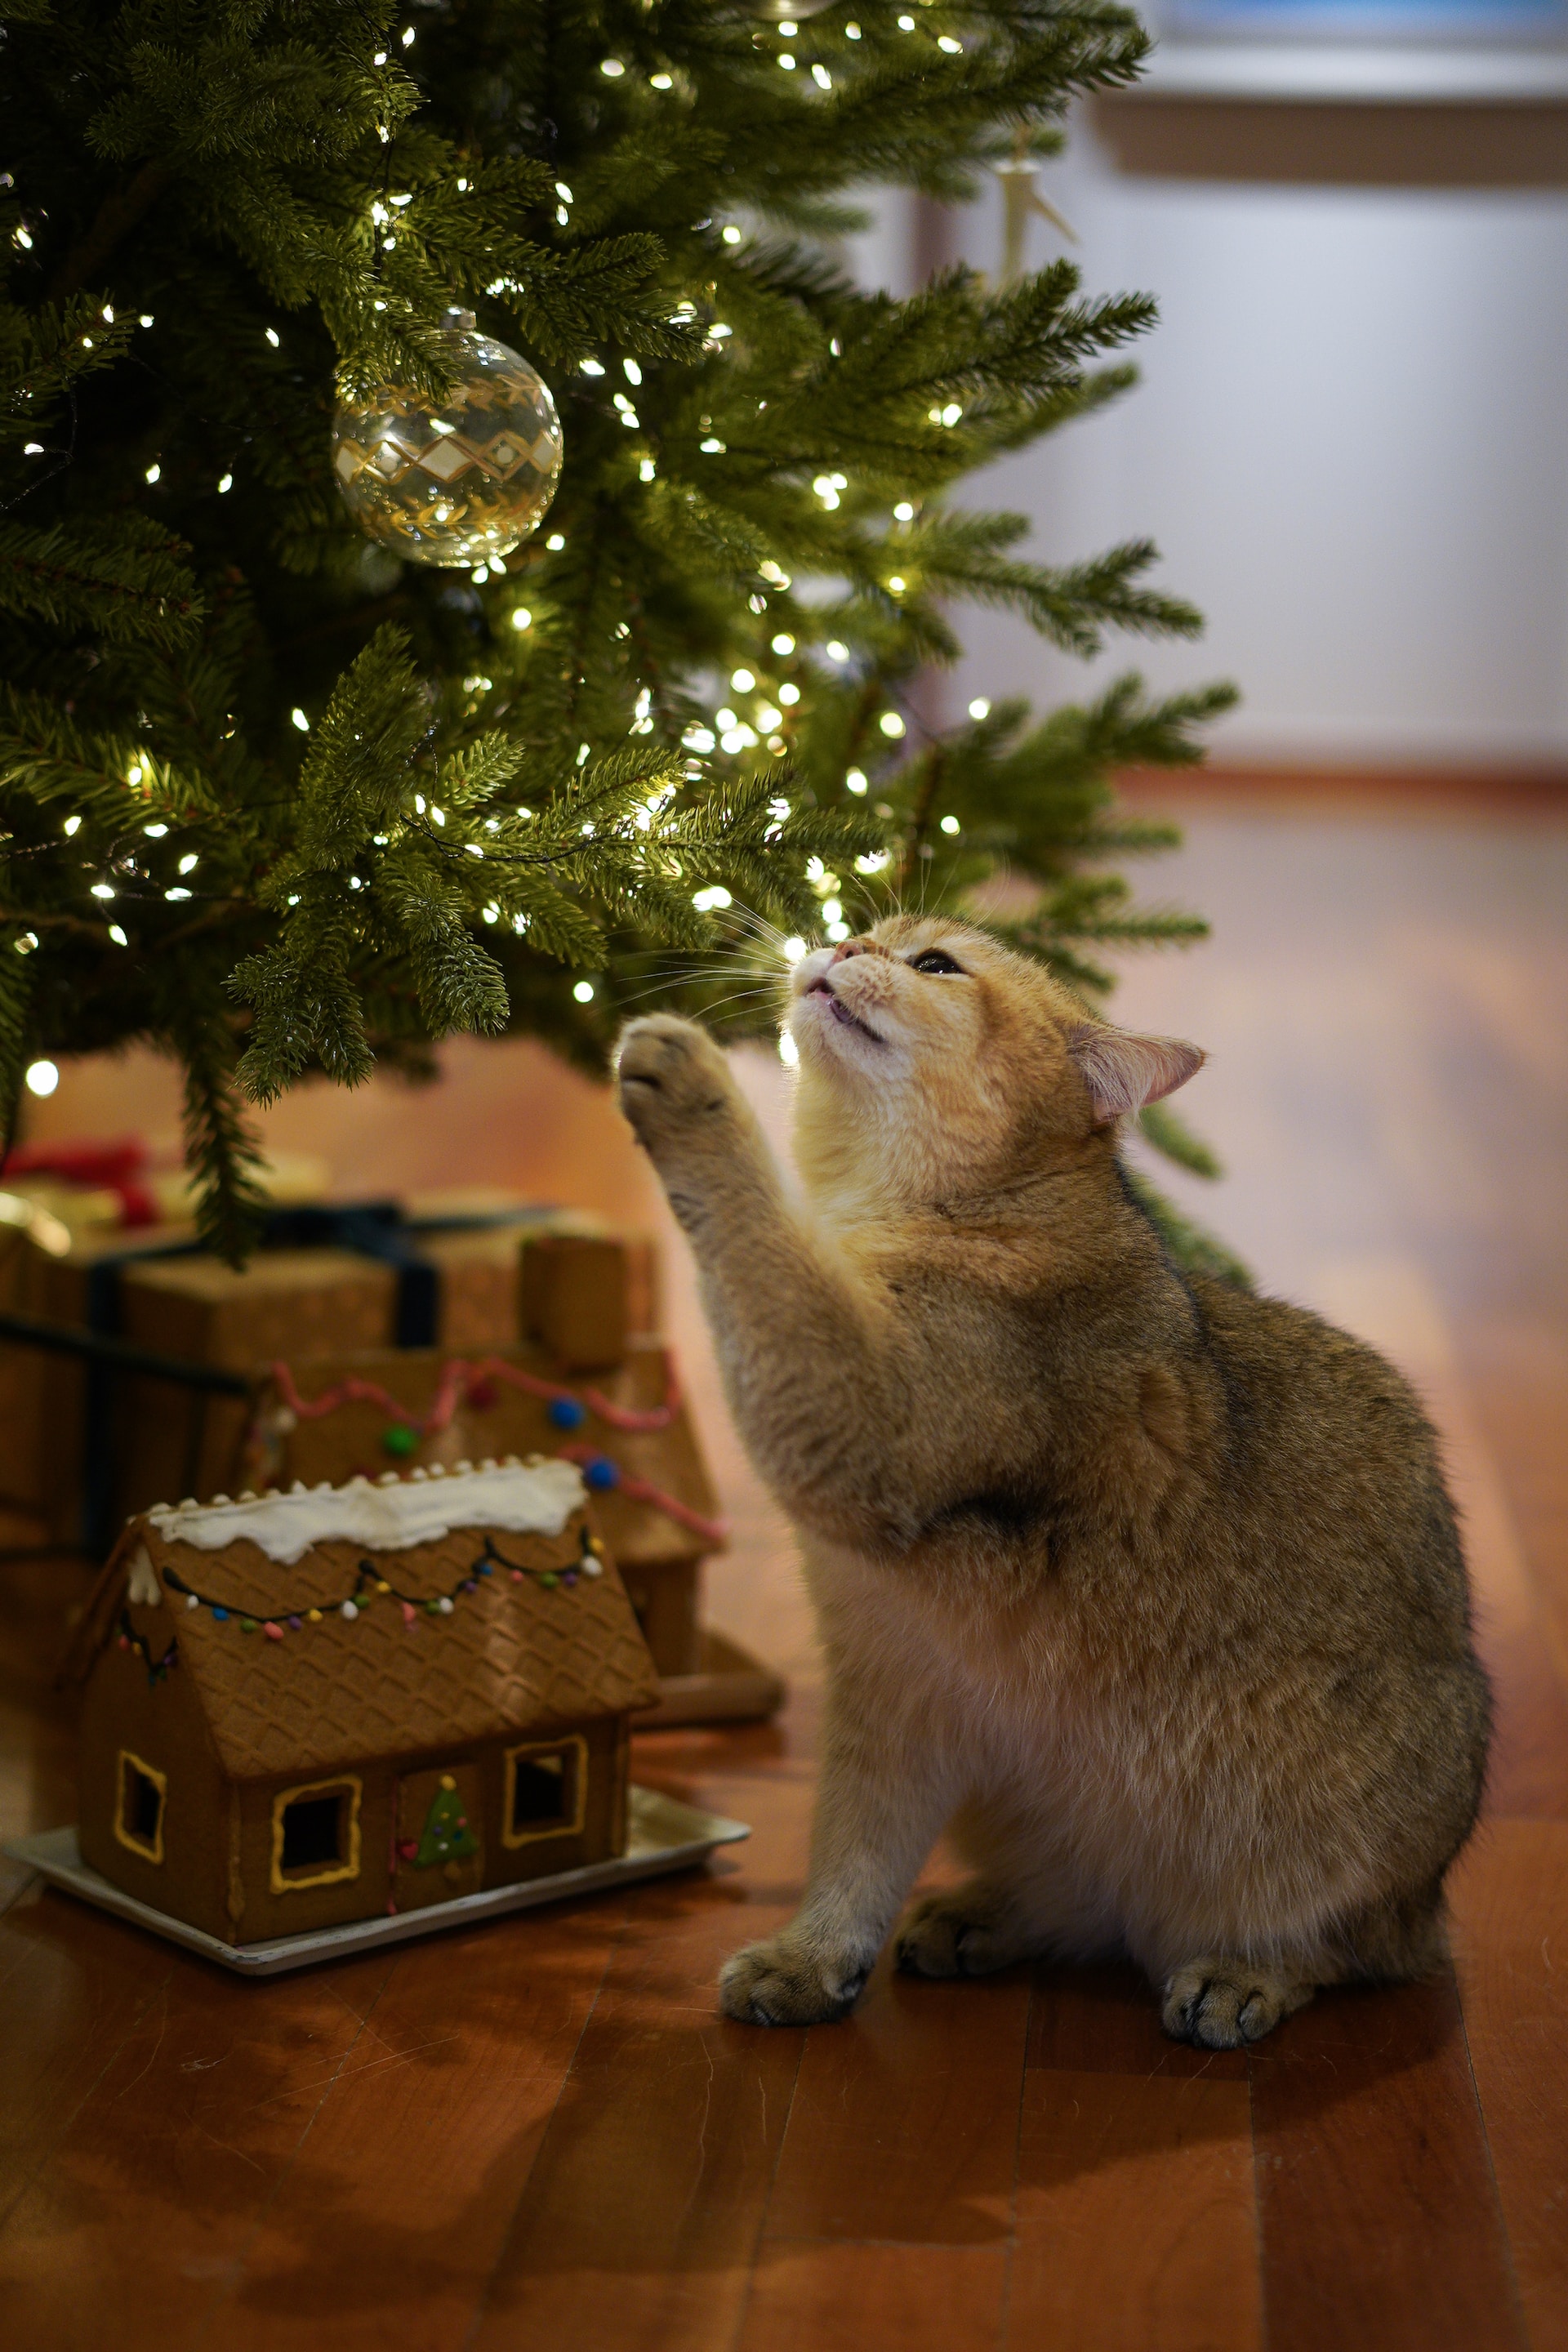  Γάτα vs χριστουγεννιάτικο δέντρο: Φέτος κράτησε το δέντρο σου ασφαλές από χνουδωτό «τερατάκι»